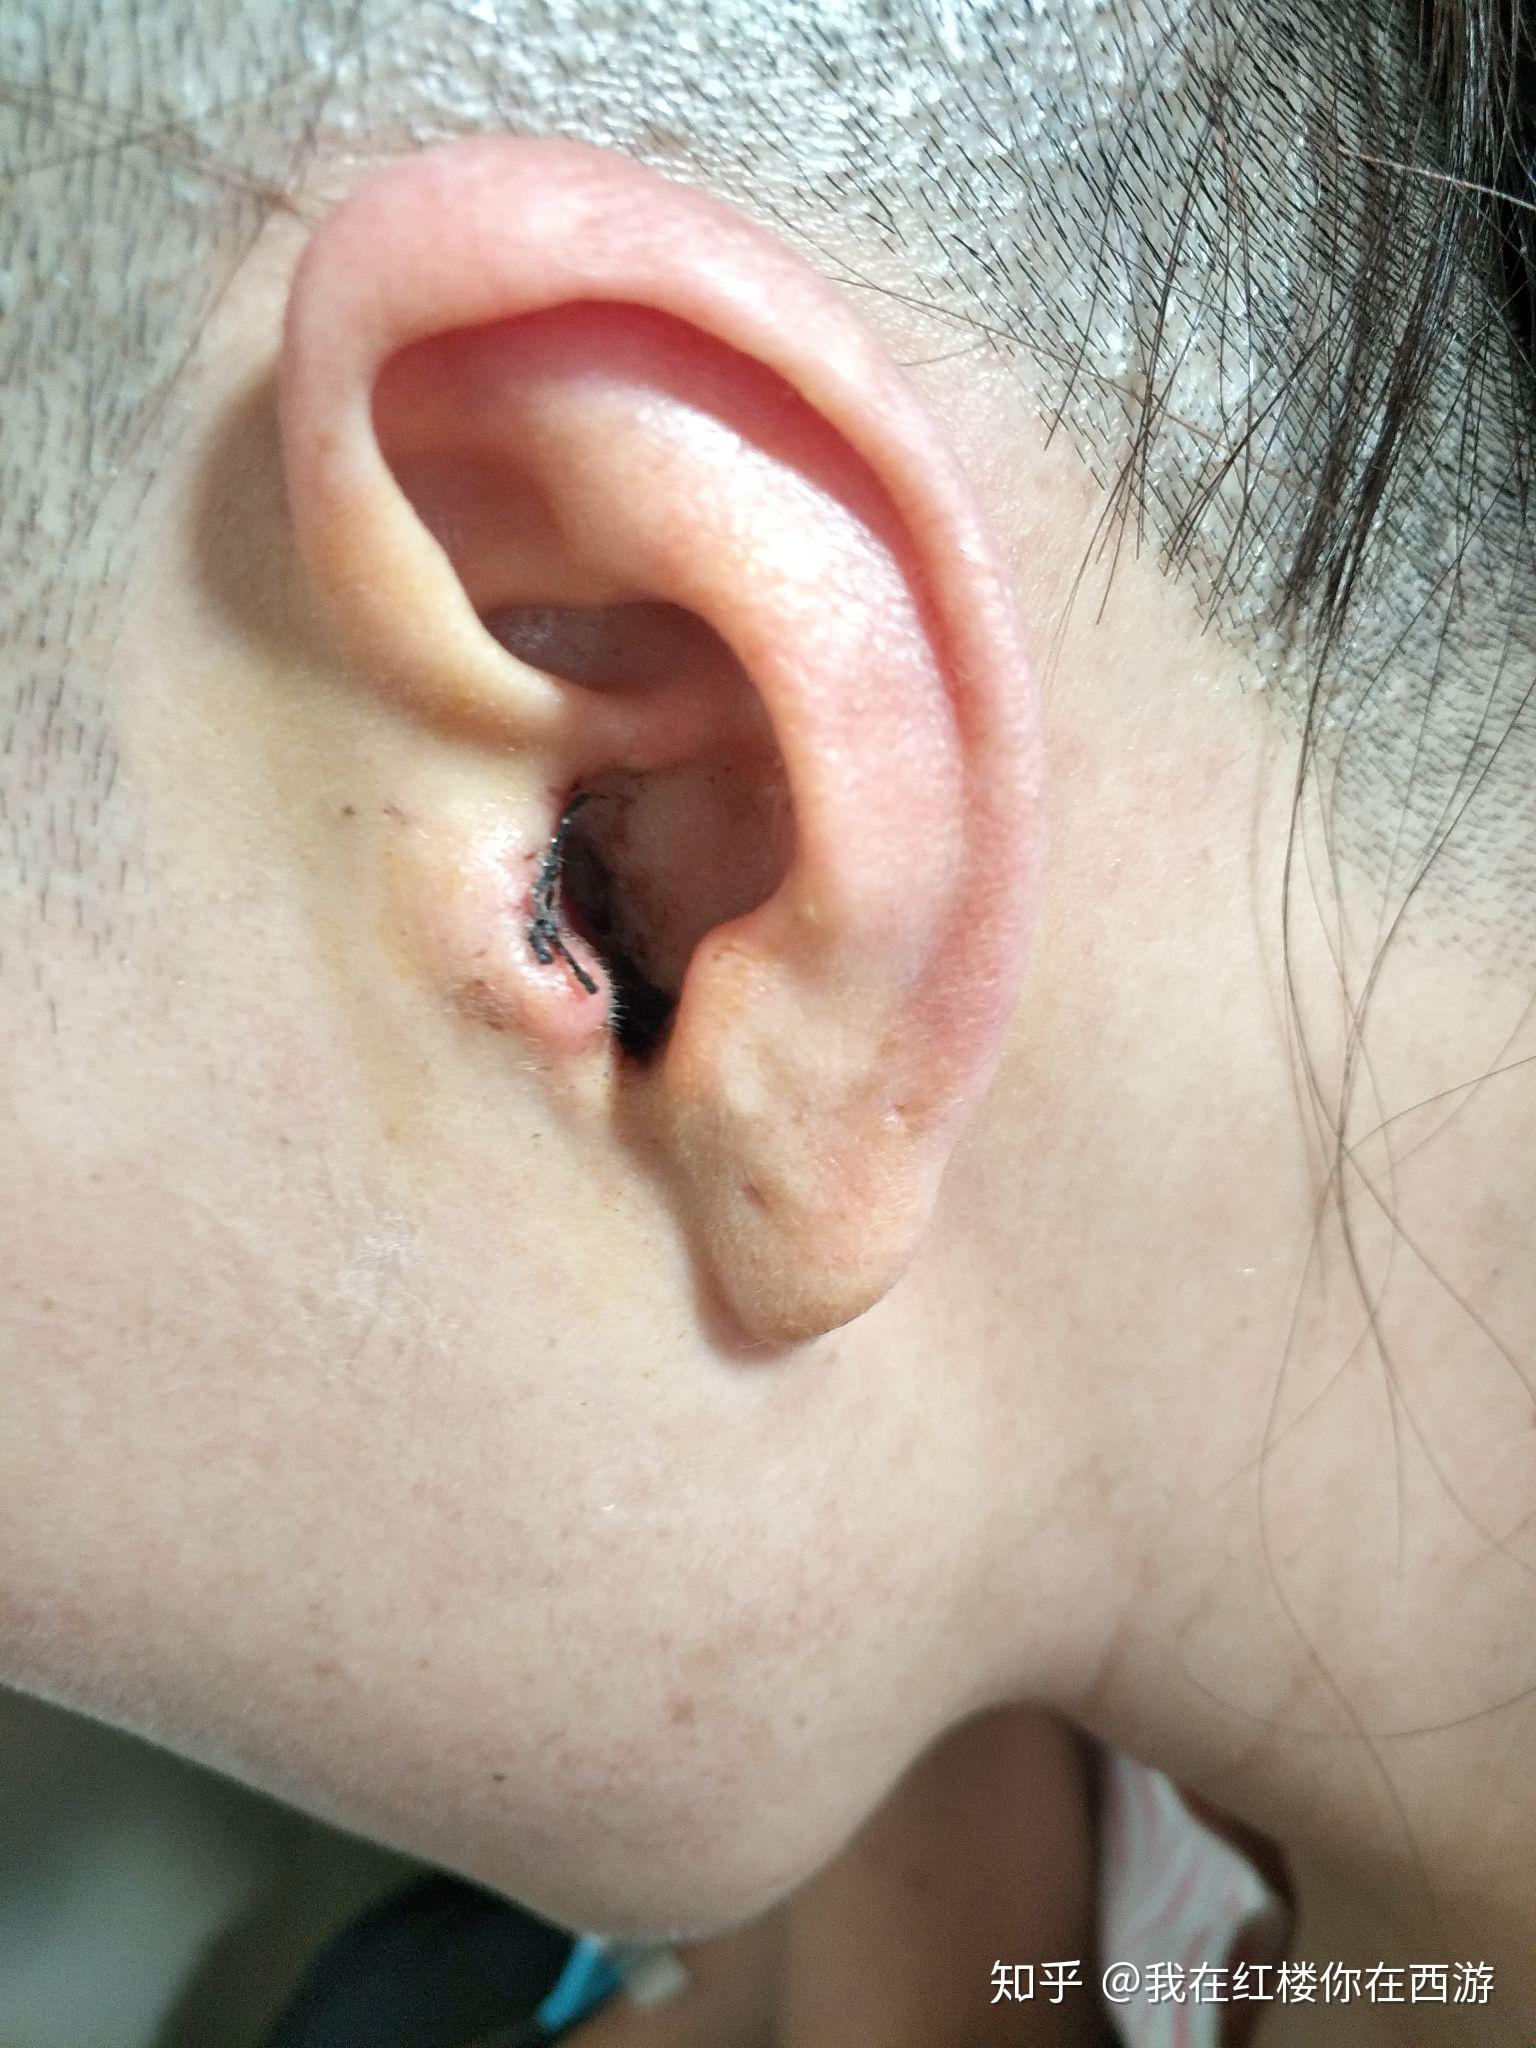 中耳炎引起鼓膜穿孔,做了鼓膜修补术